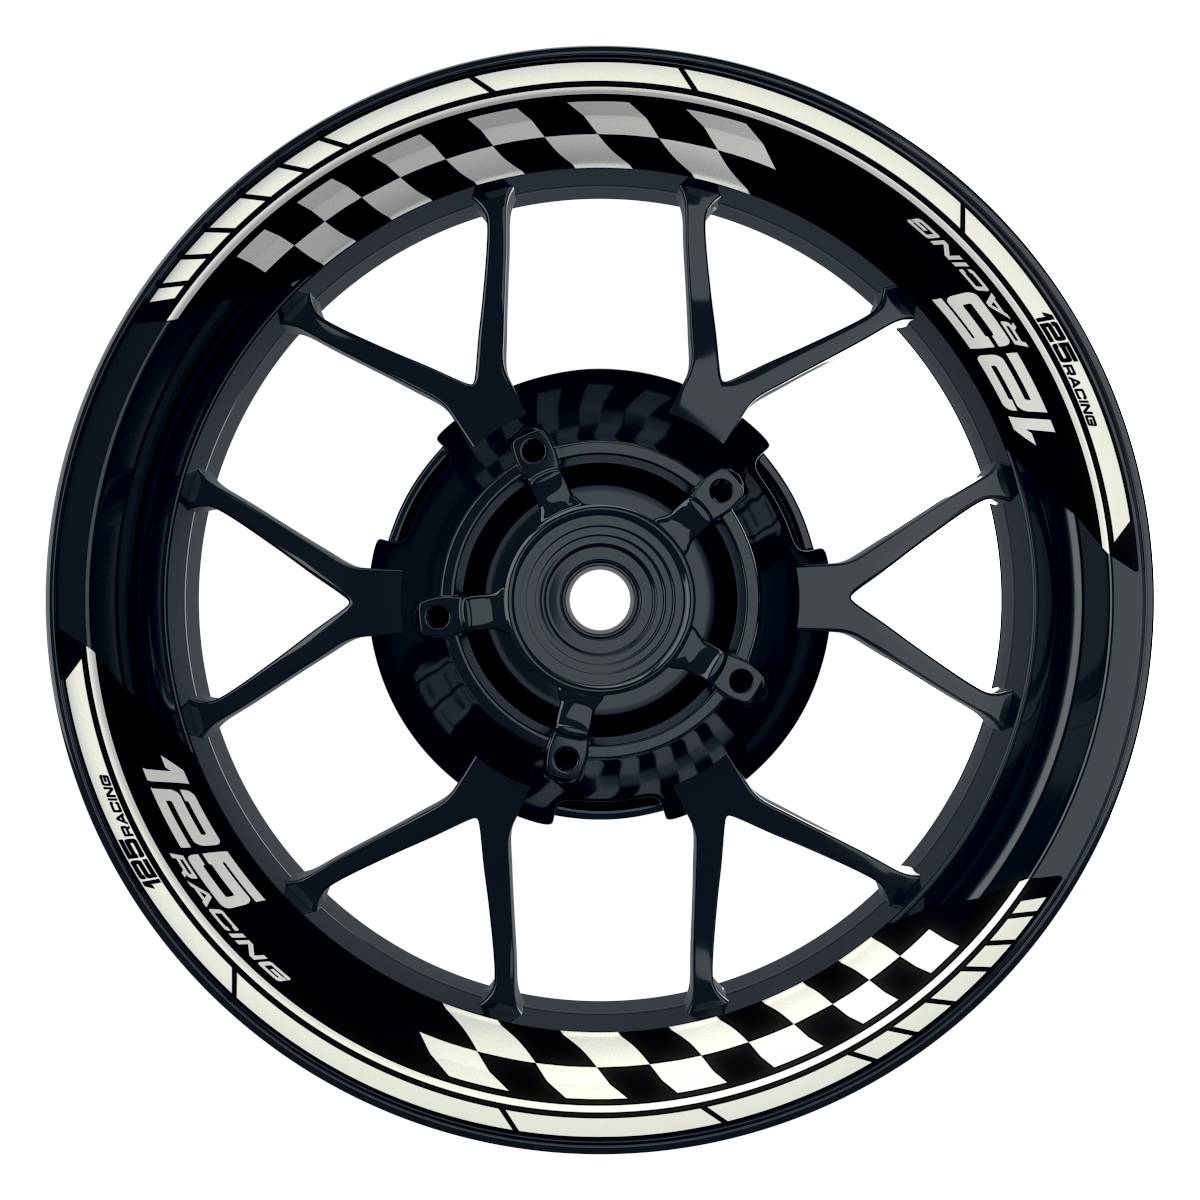 KTM Racing 125 Grid schwarz weiss Frontansicht